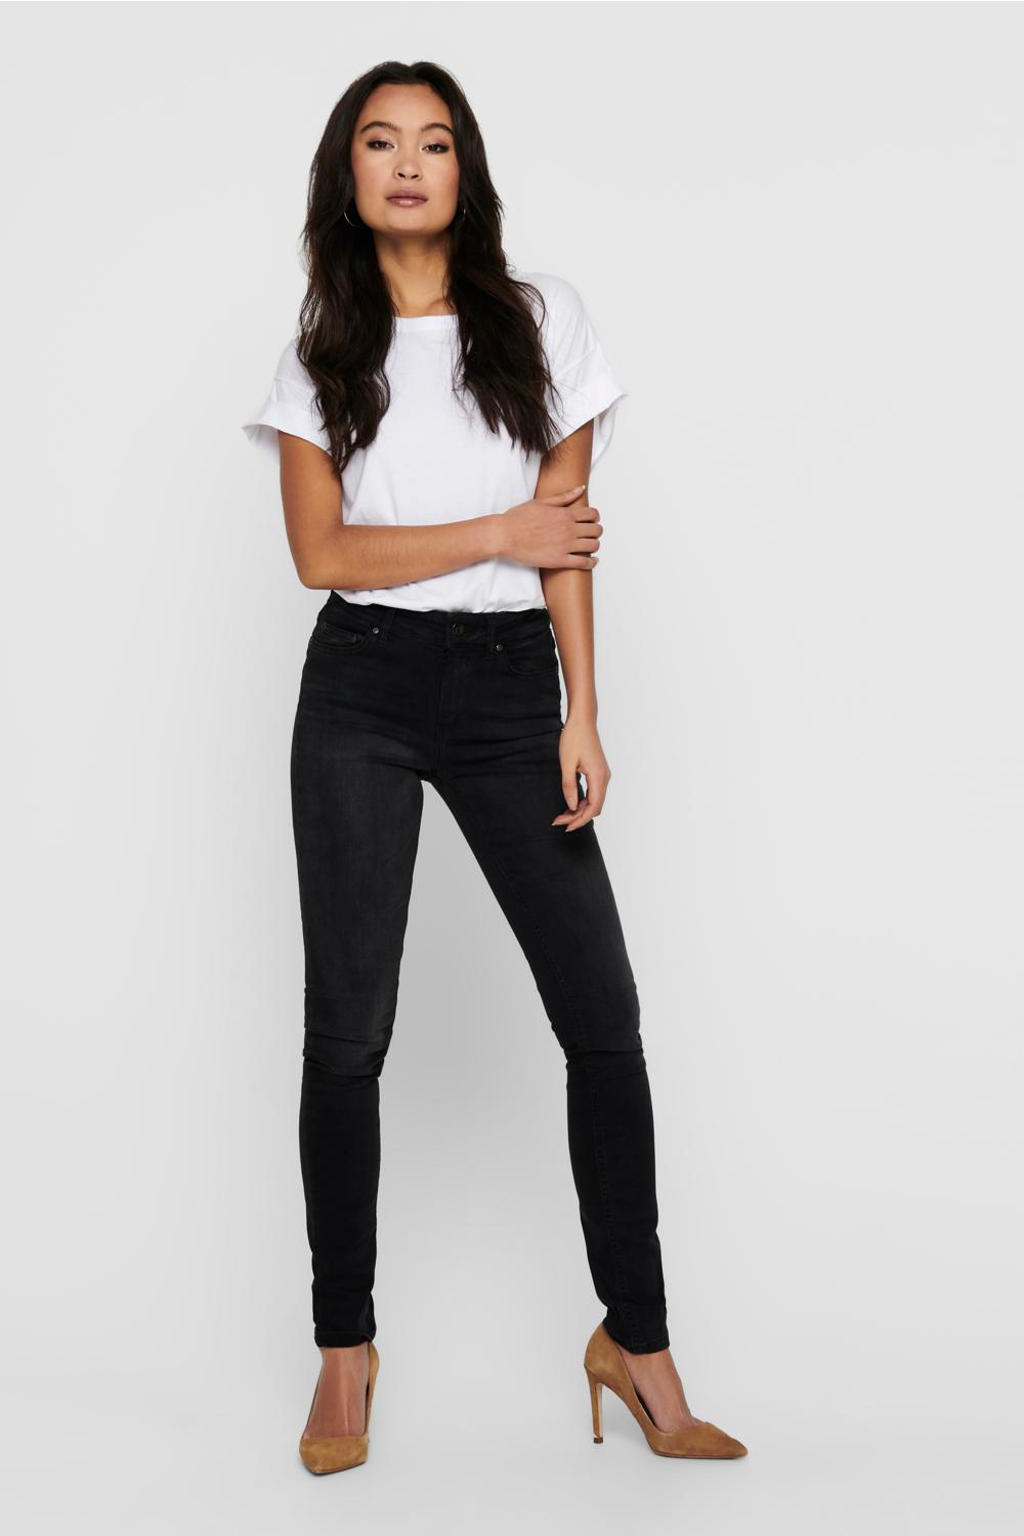 Zwarte dames ONLY skinny jeans black van stretchdenim met regular waist en rits- en knoopsluiting